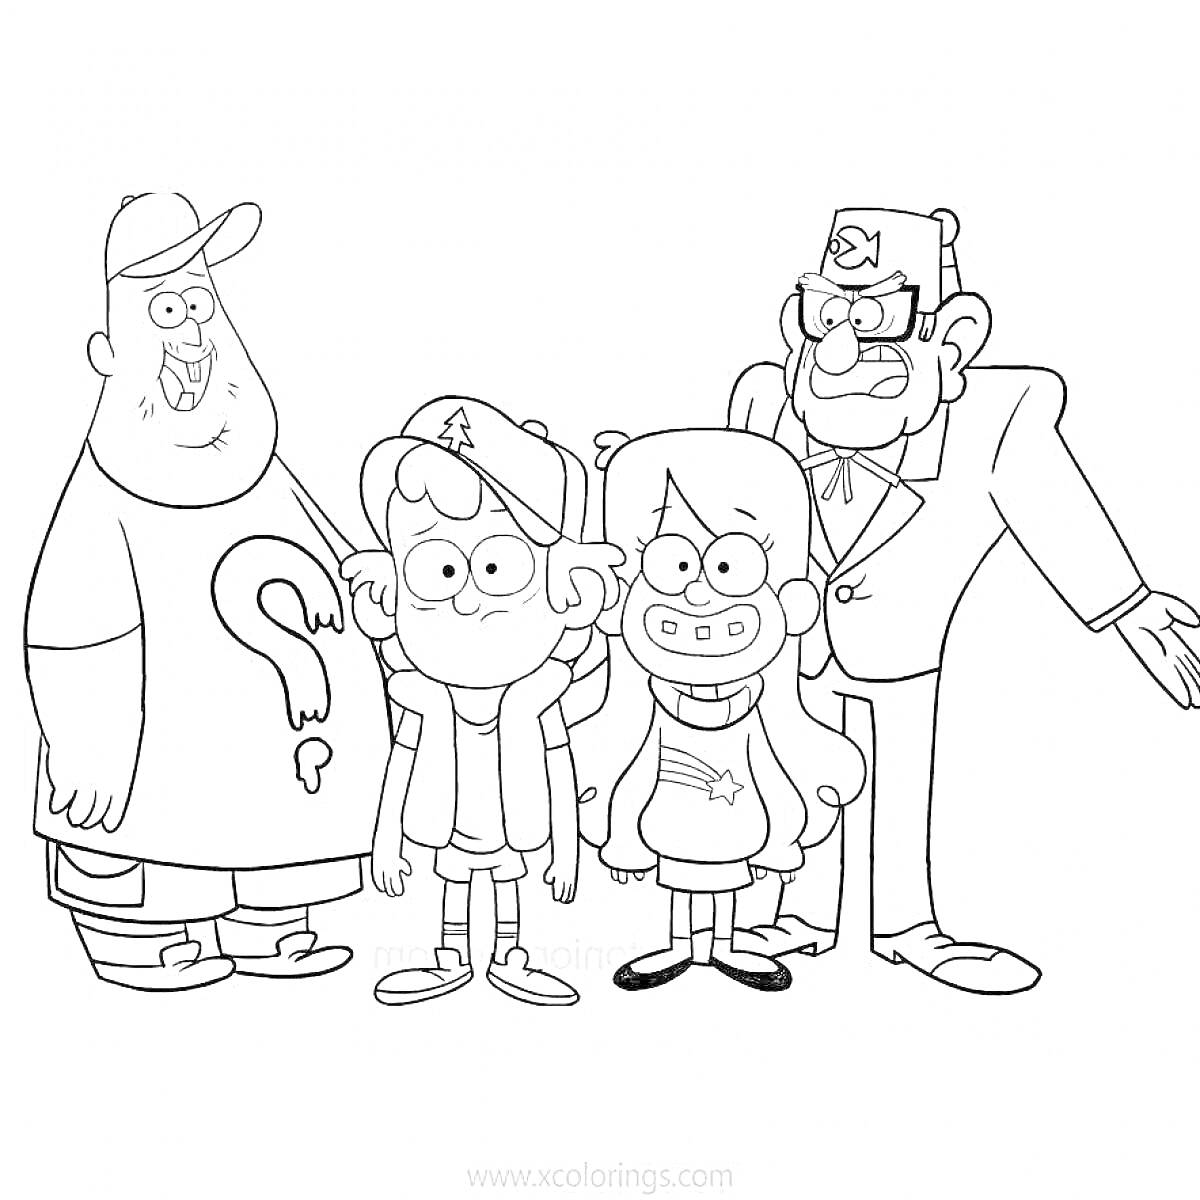 Раскраска Раскраска с четырьмя персонажами из мультфильма (мальчик в кепке, девочка с длинными волосами и свитером, мужчина в костюме с феской, и мужчина с бородой в кепке и футболке с вопросительным знаком)